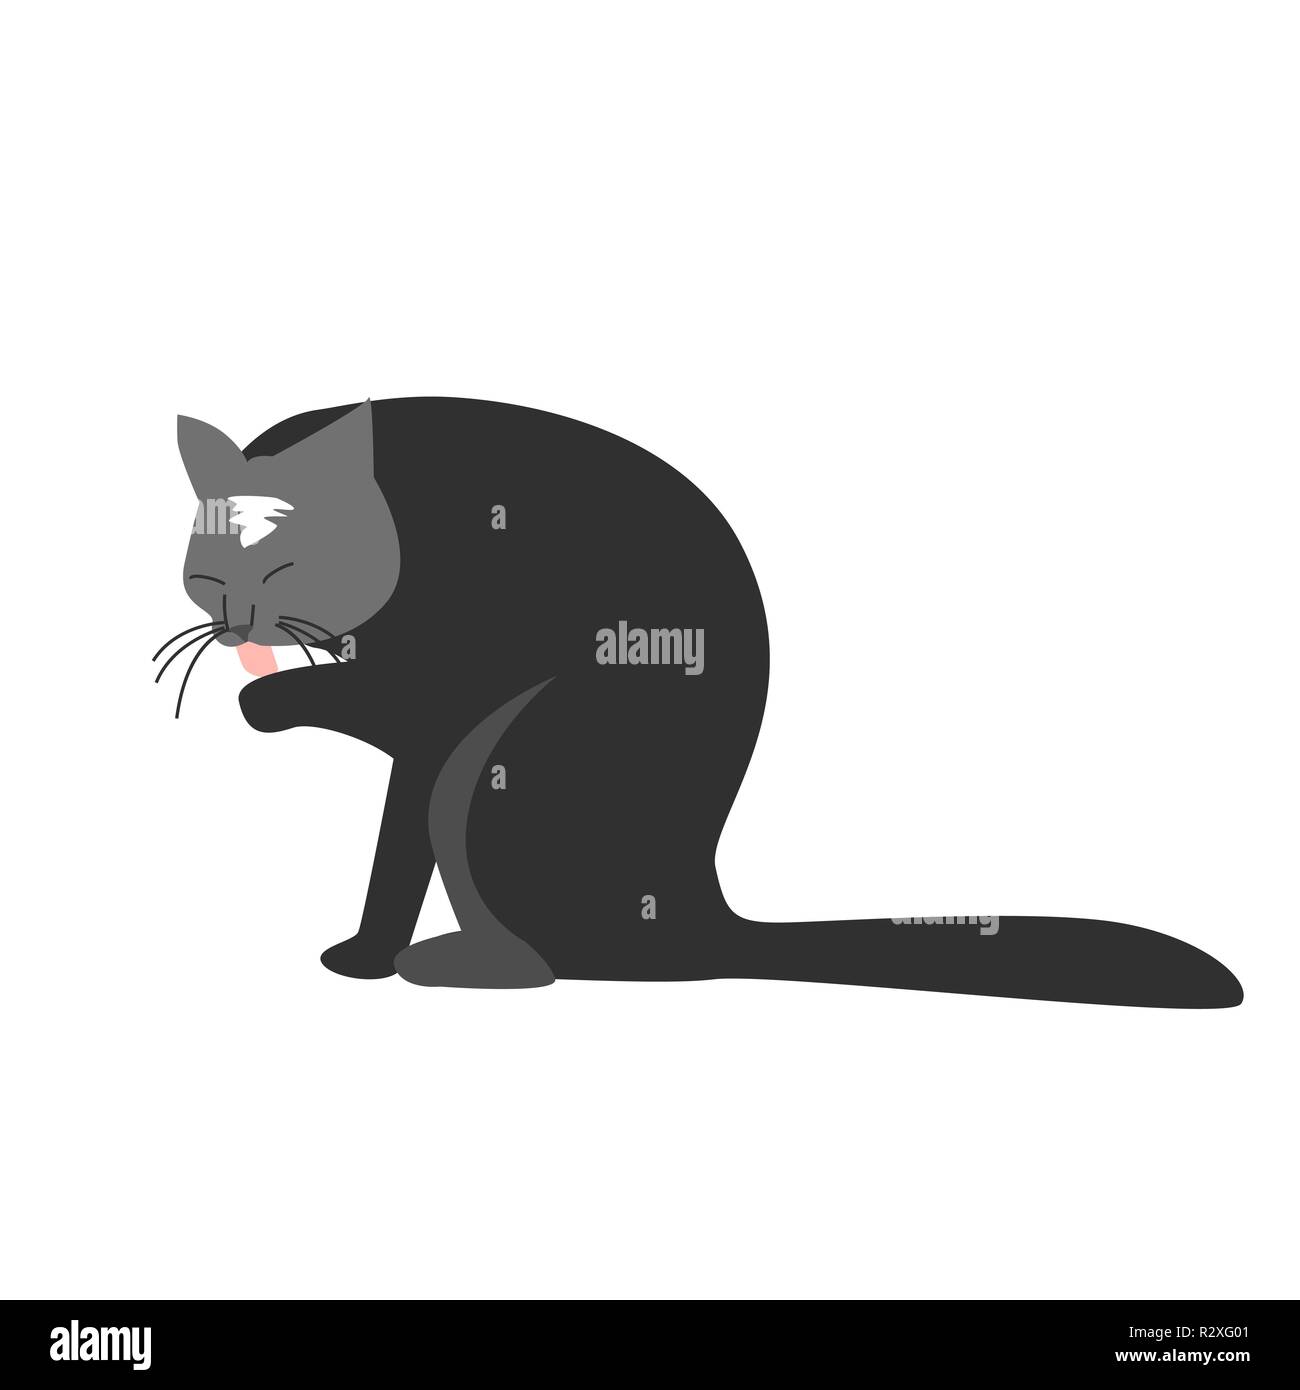 Funny disegnati a mano gatto nero è leccare la sua zampa. Illustrazione vettoriale di un personaggio dei cartoni animati Illustrazione Vettoriale